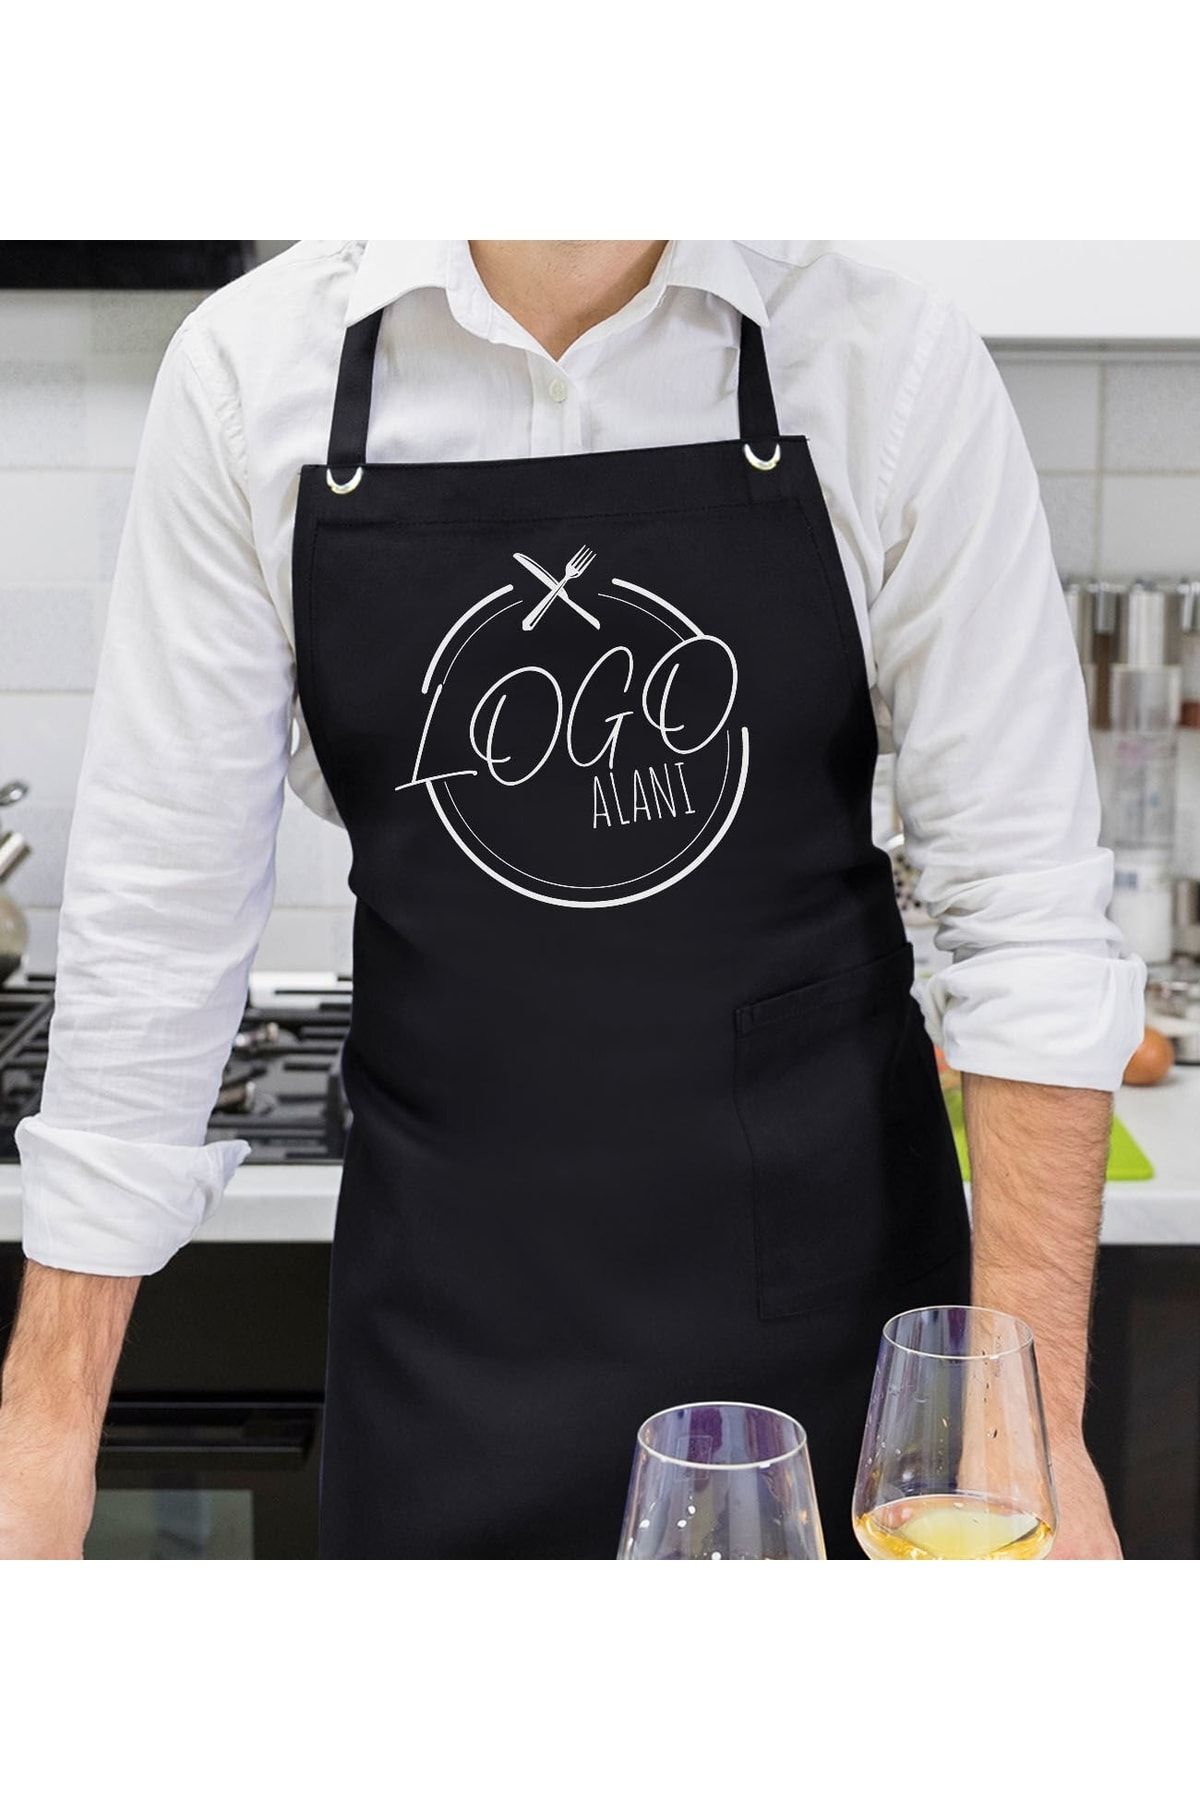 Bk Gift Firmalara Özel Logolu Profesyonel Siyah Mutfak Önlüğü (10 Adet), Aşçı Önlüğü, Şef Önlüğü, Re